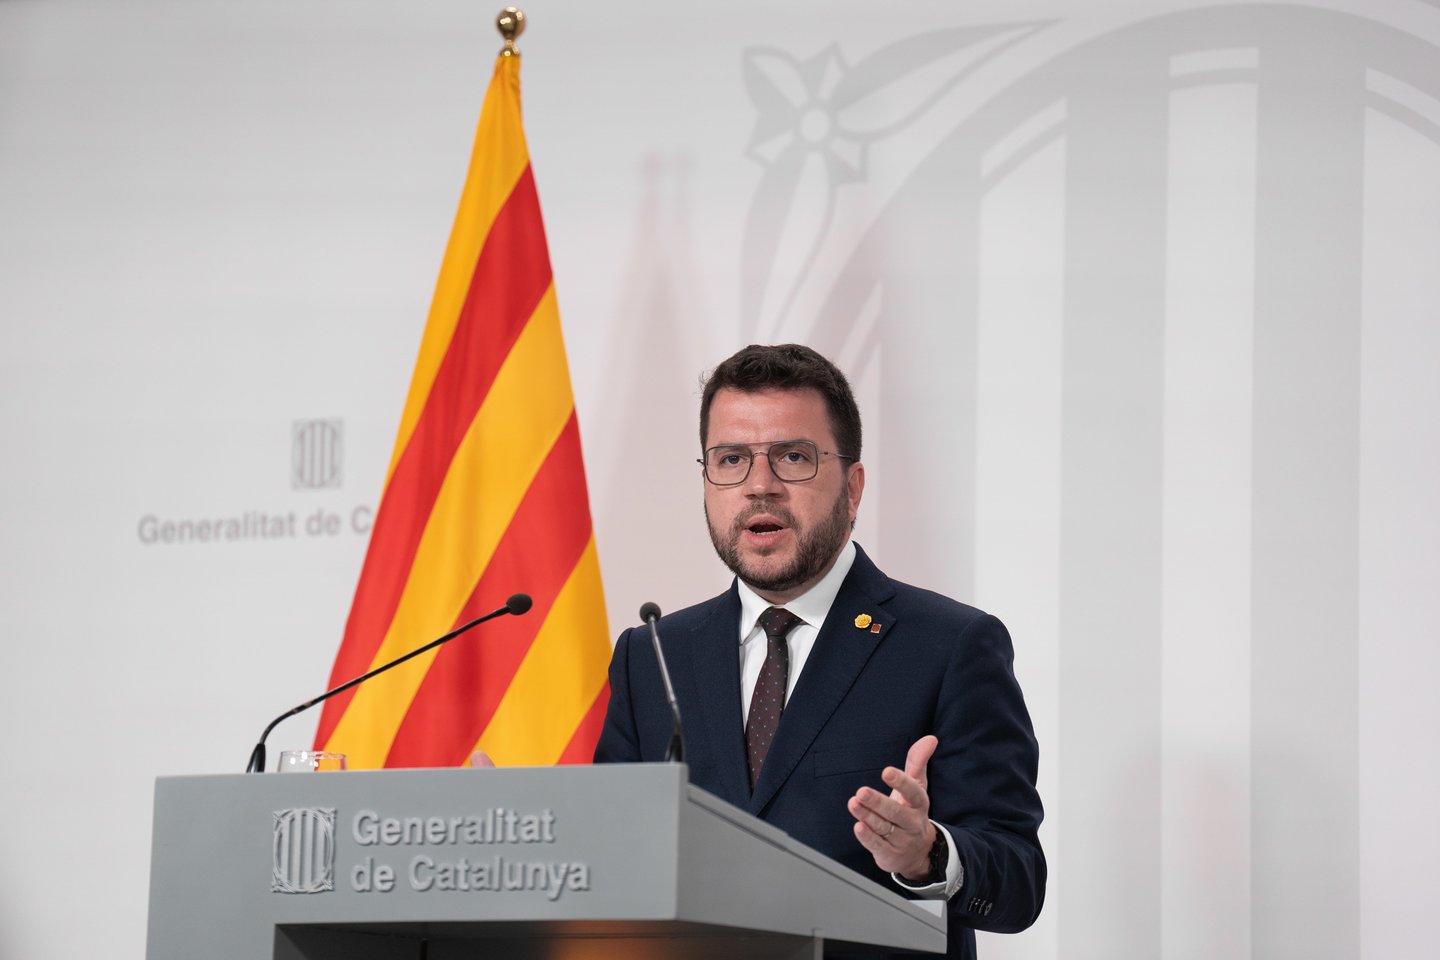 Ispanijos centrinė vyriausybė atmetė naujus Katalonijos regiono planus surengti referendumą dėl nepriklausomybės. „Kol vyriausybei vadovaus (Pedro) Sanchezas, referendumo dėl apsisprendimo Katalonijoje nebus“, – trečiadienį žurnalistams Madride sakė finansų ministrė Maria Jesus Montero. Ji pabrėžė, kad premjero Pere‘o Aragoneso vadovaujama Katalonijos vyriausybė turi laikytis konstitucijos.<br>Zuma Press/Scanpix nuotr.